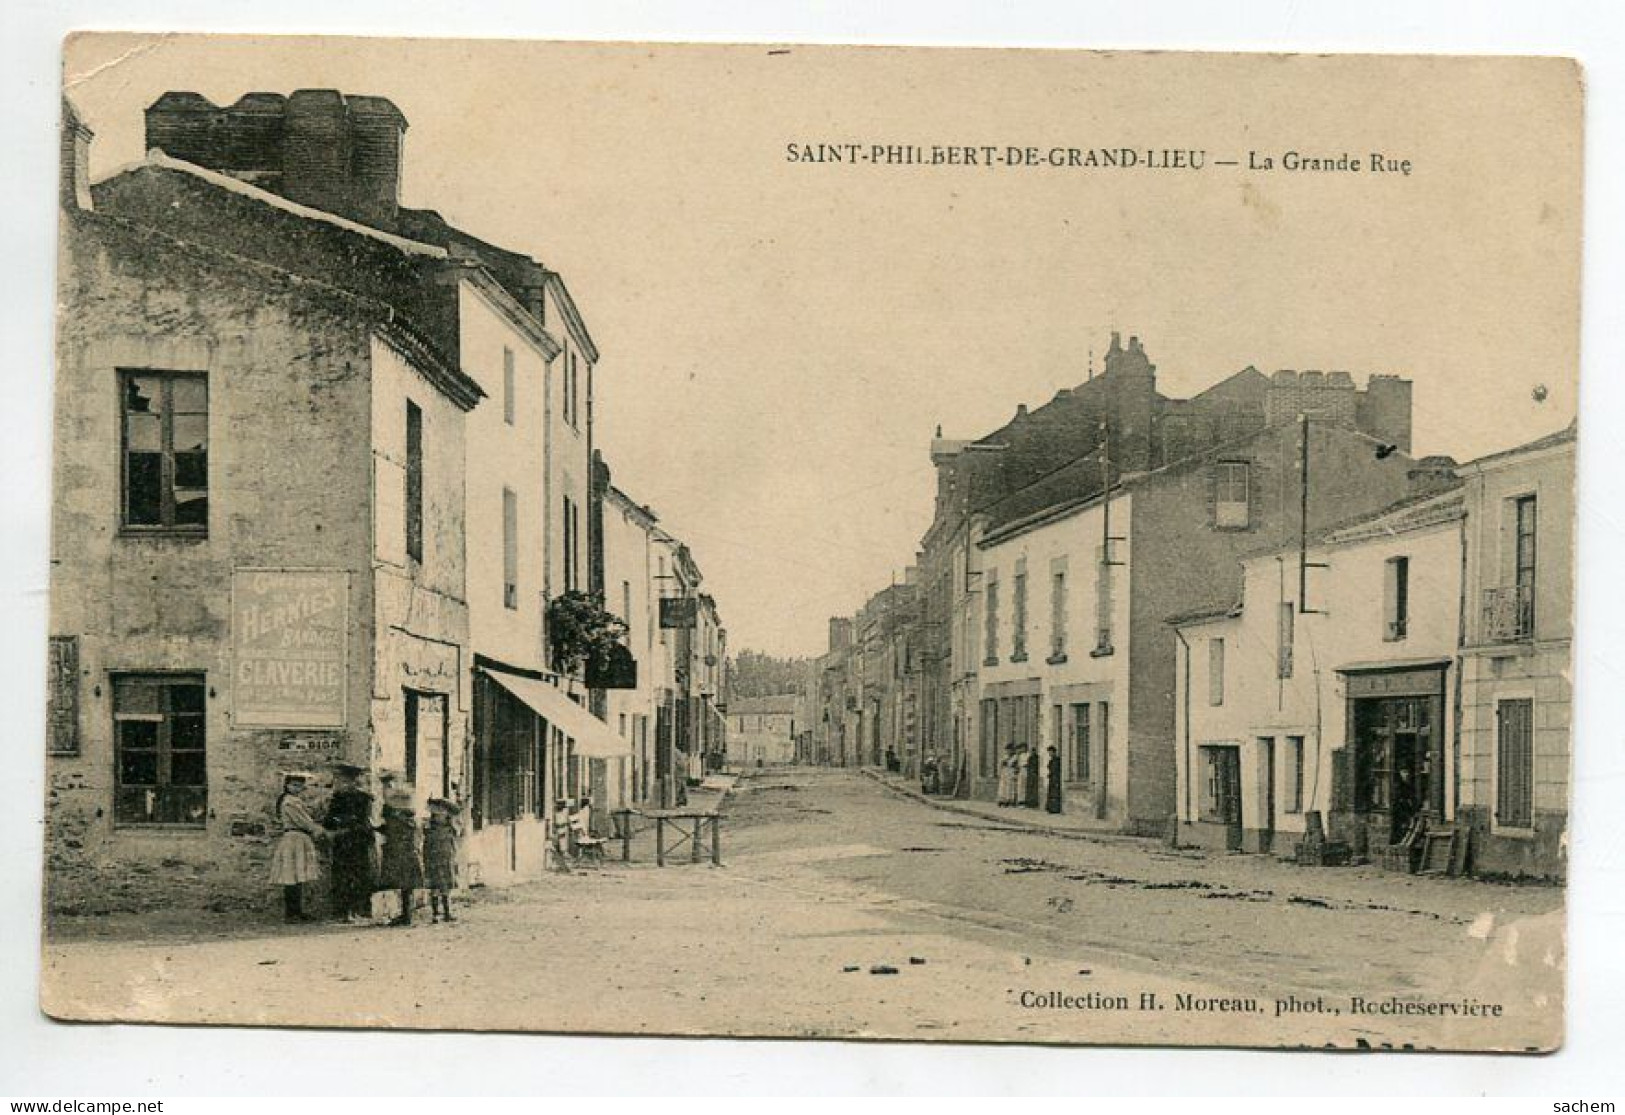 44 DEP 593 ST SAINT PHILBERT De GRAND LIEU Fillettes La Grande Rue Commerces Publicités Mur  1932 écrite Timbrée - Saint-Philbert-de-Grand-Lieu